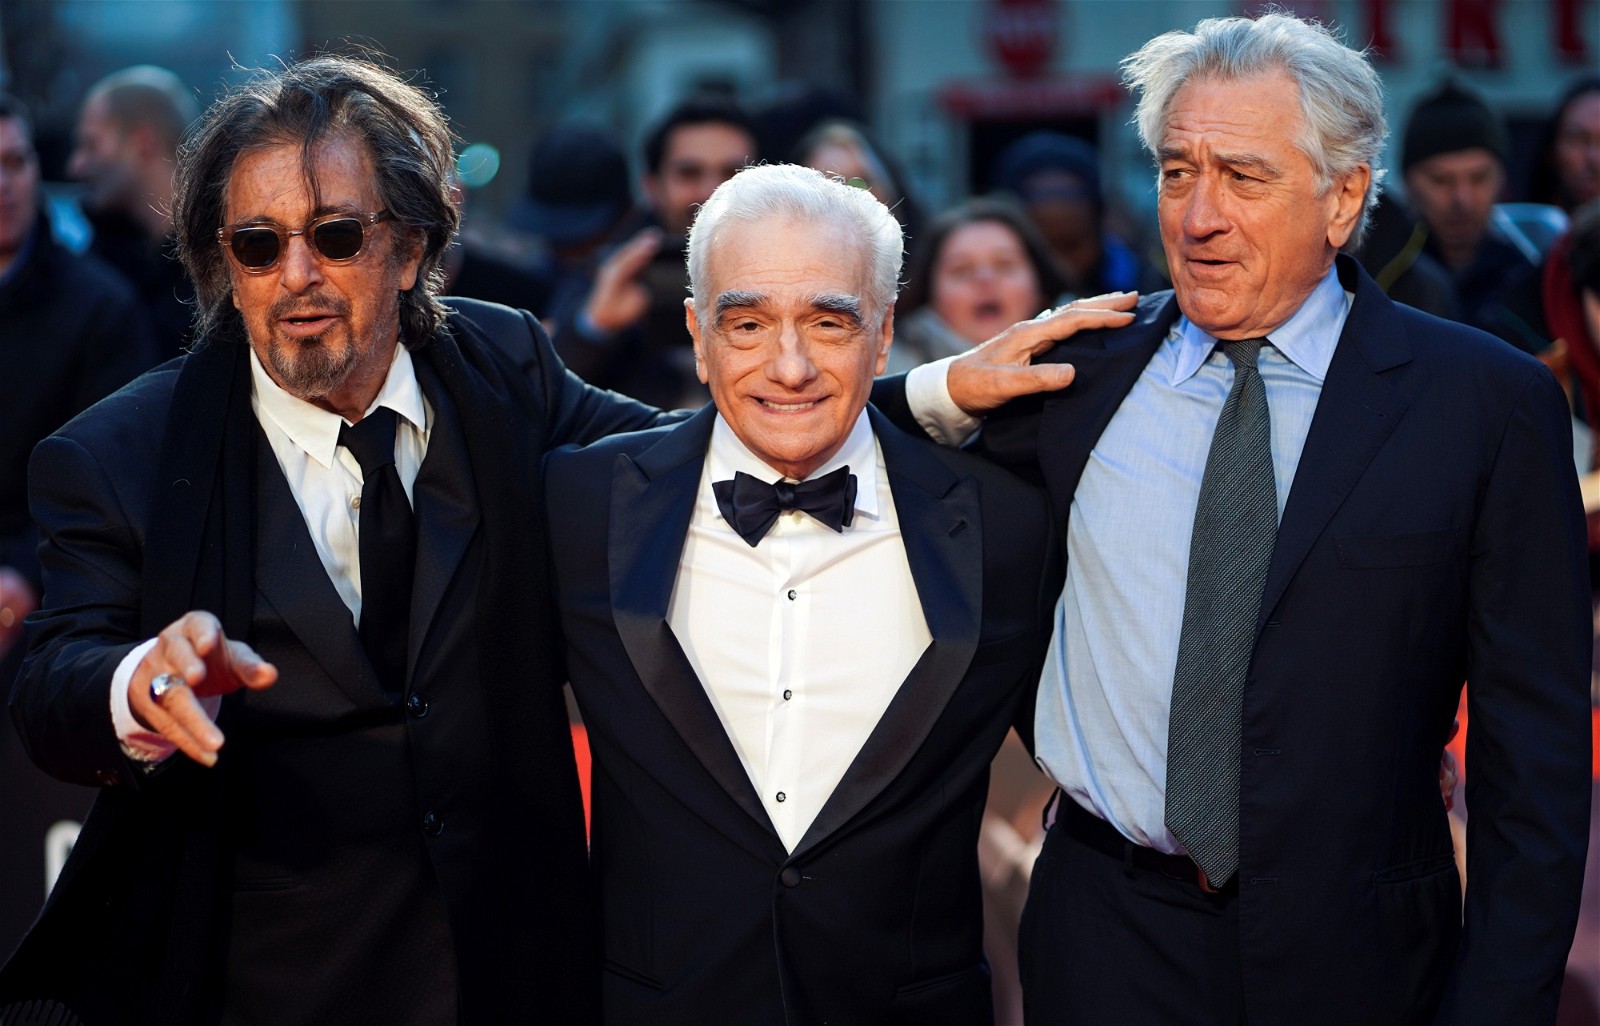 Al Pacino, Martin Scorsese, and Robert De Niro